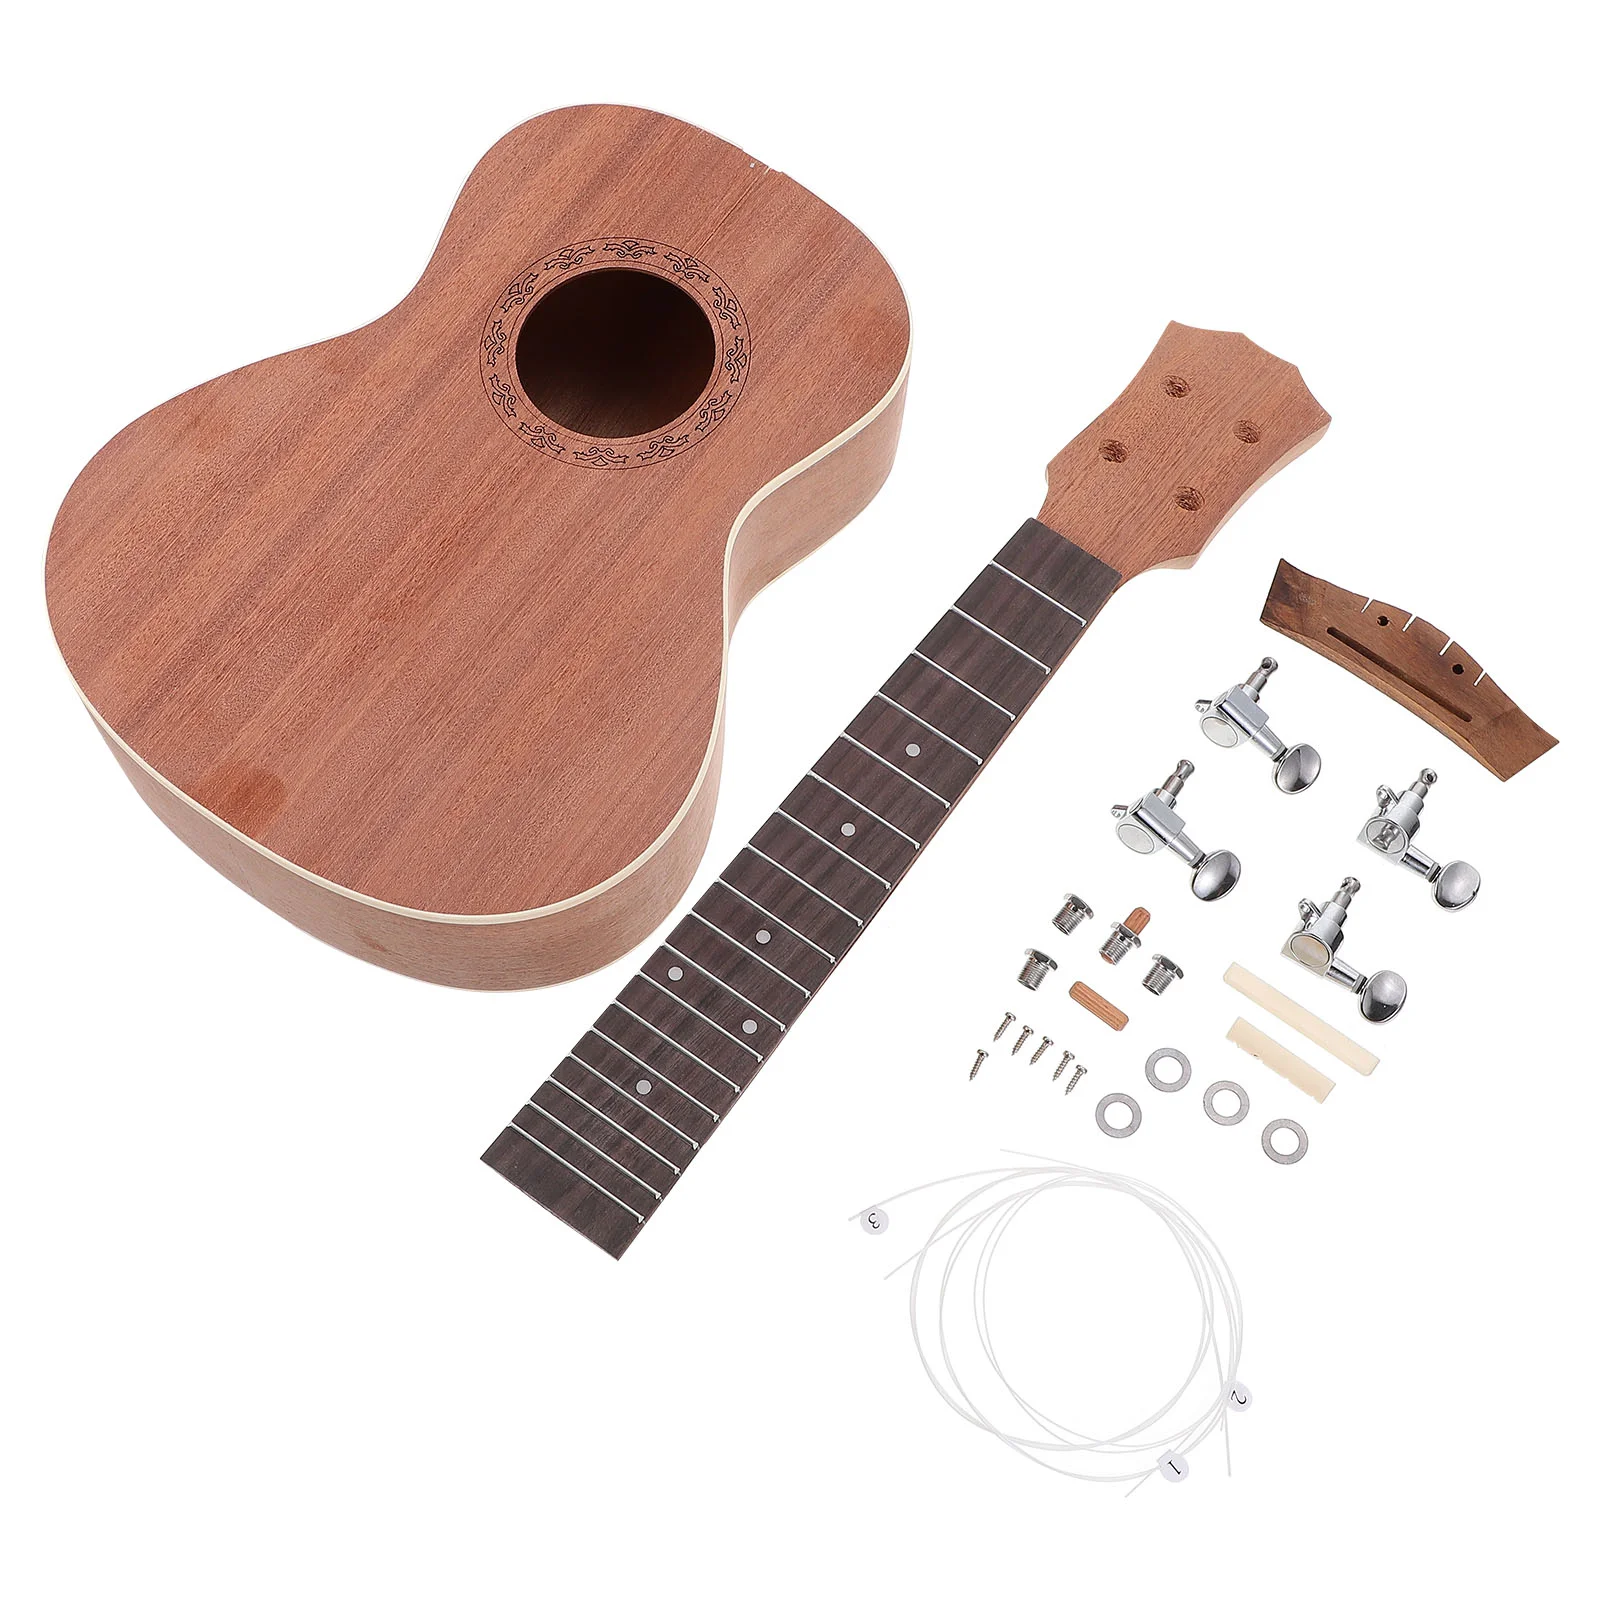 

Комплект укулеле, гитара, игрушки для начинающих, детский материал, музыкальные инструменты для малышей, игрушка сопрано, украшение для детей, Гаваи